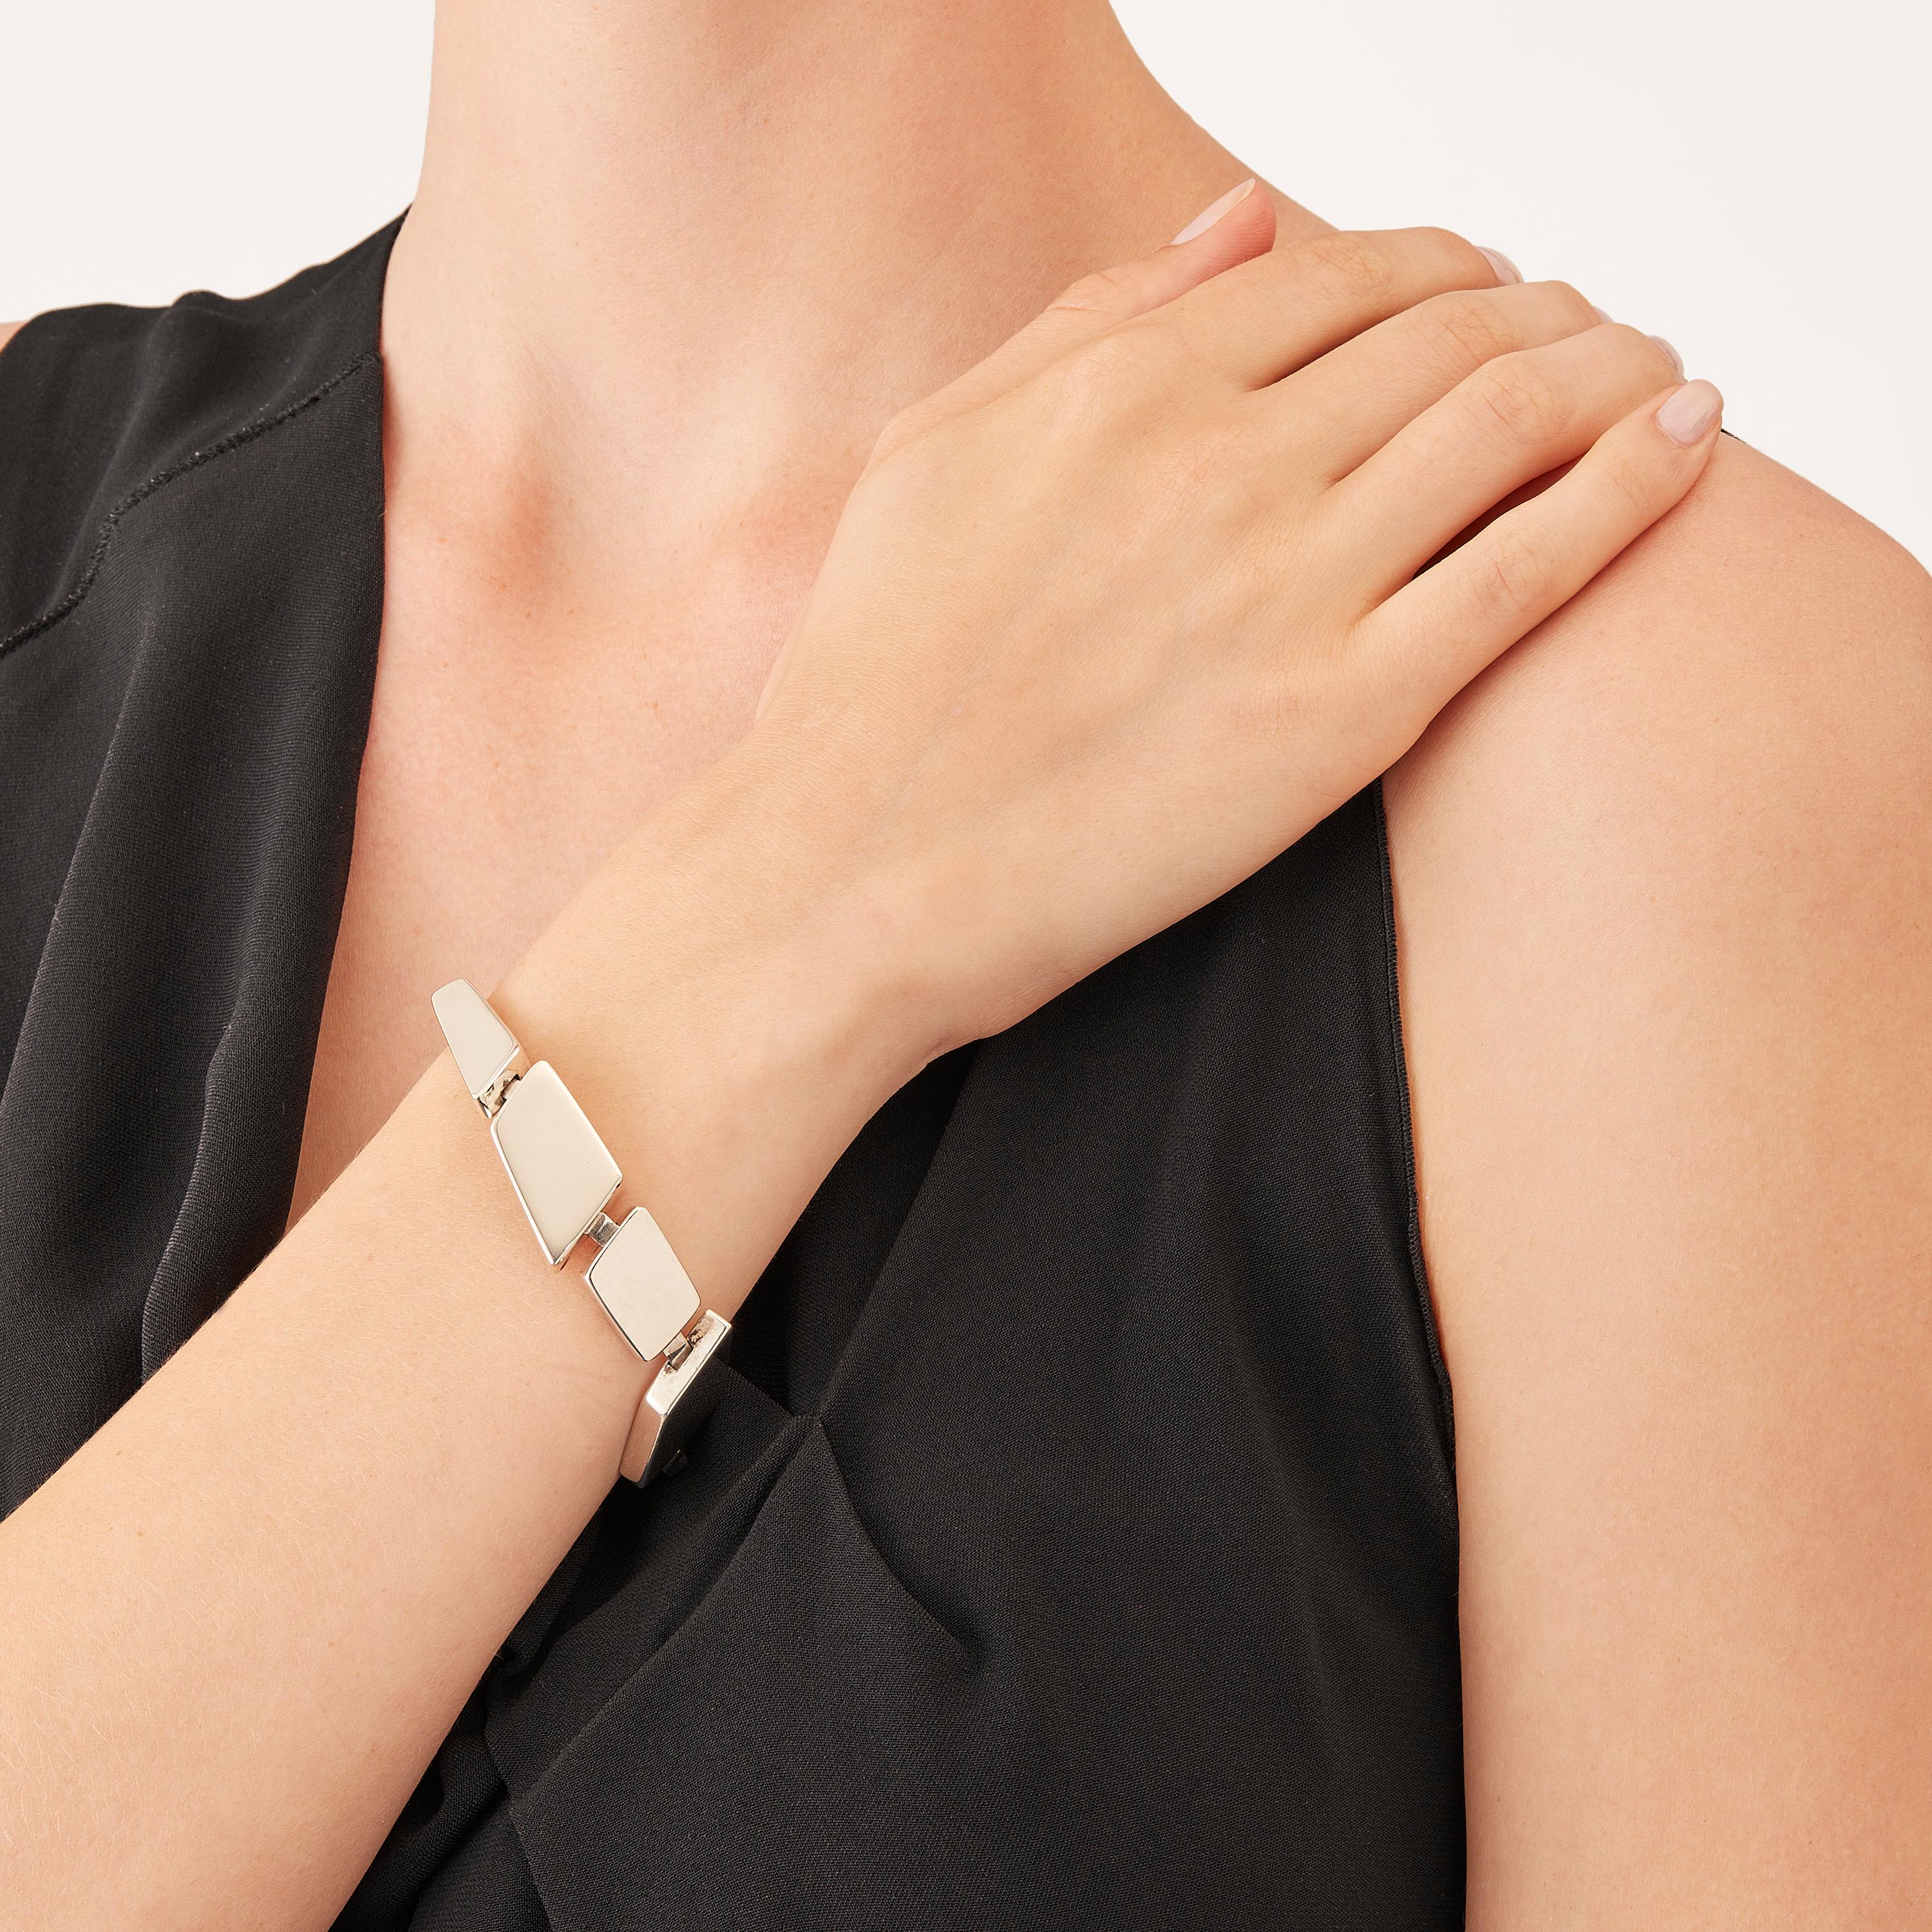 Das in limitierter Auflage im Mailänder Atelier von Nathalie Jean handgefertigte Armband Saphir Absolu besteht aus leichten geometrischen Hohlkörpern mit abgerundeten Kanten aus Sterlingsilber. Dank raffinierter, versteckter Glieder lassen sich die